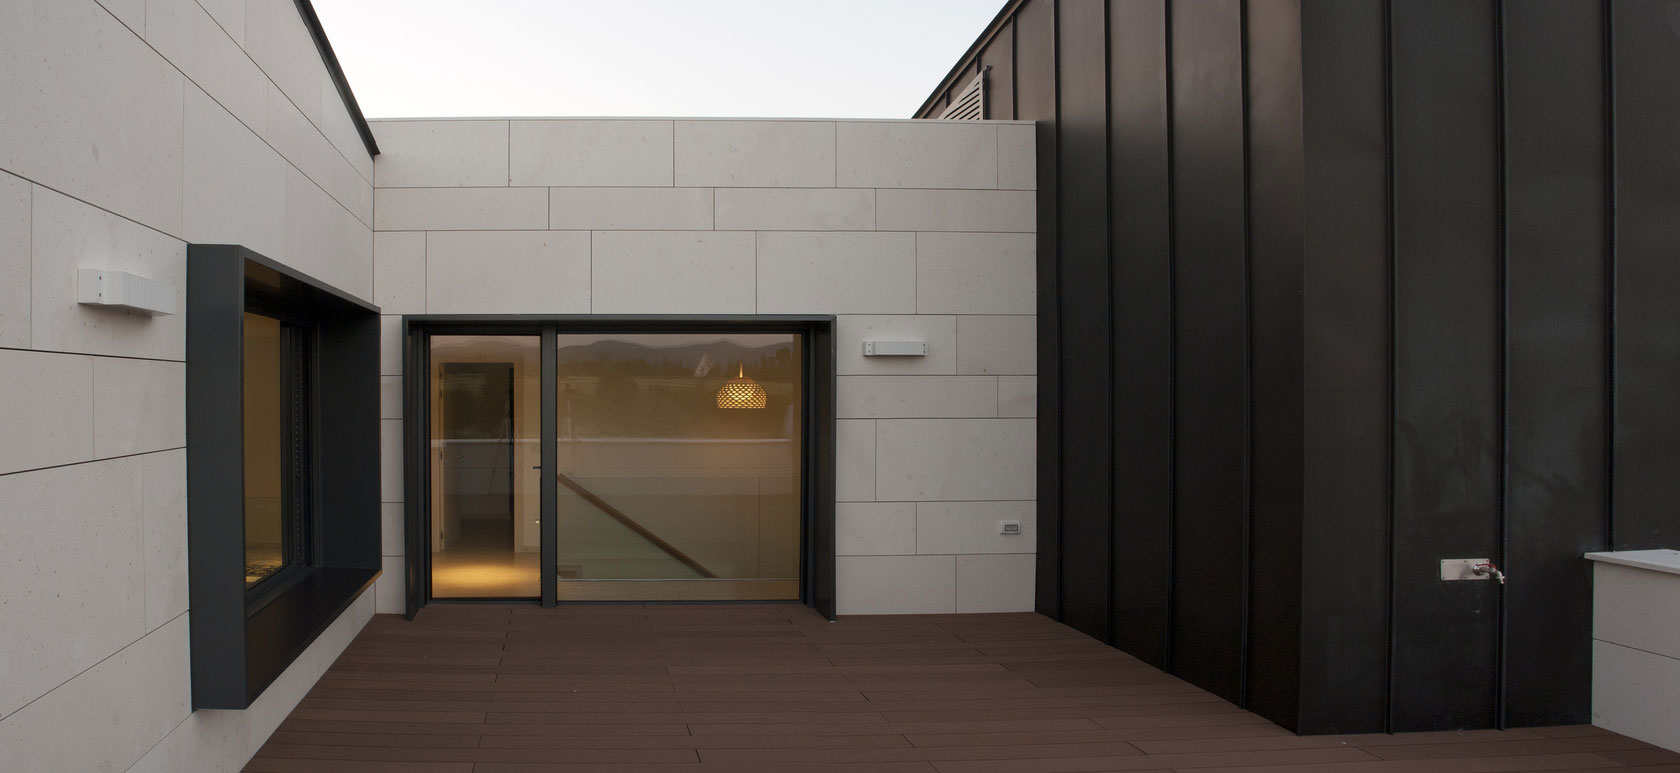 Интерьер двухэтажного особняка в Испании от дизайнеров Patxi Cortazar Arquitecto, Виктория-Гастейс